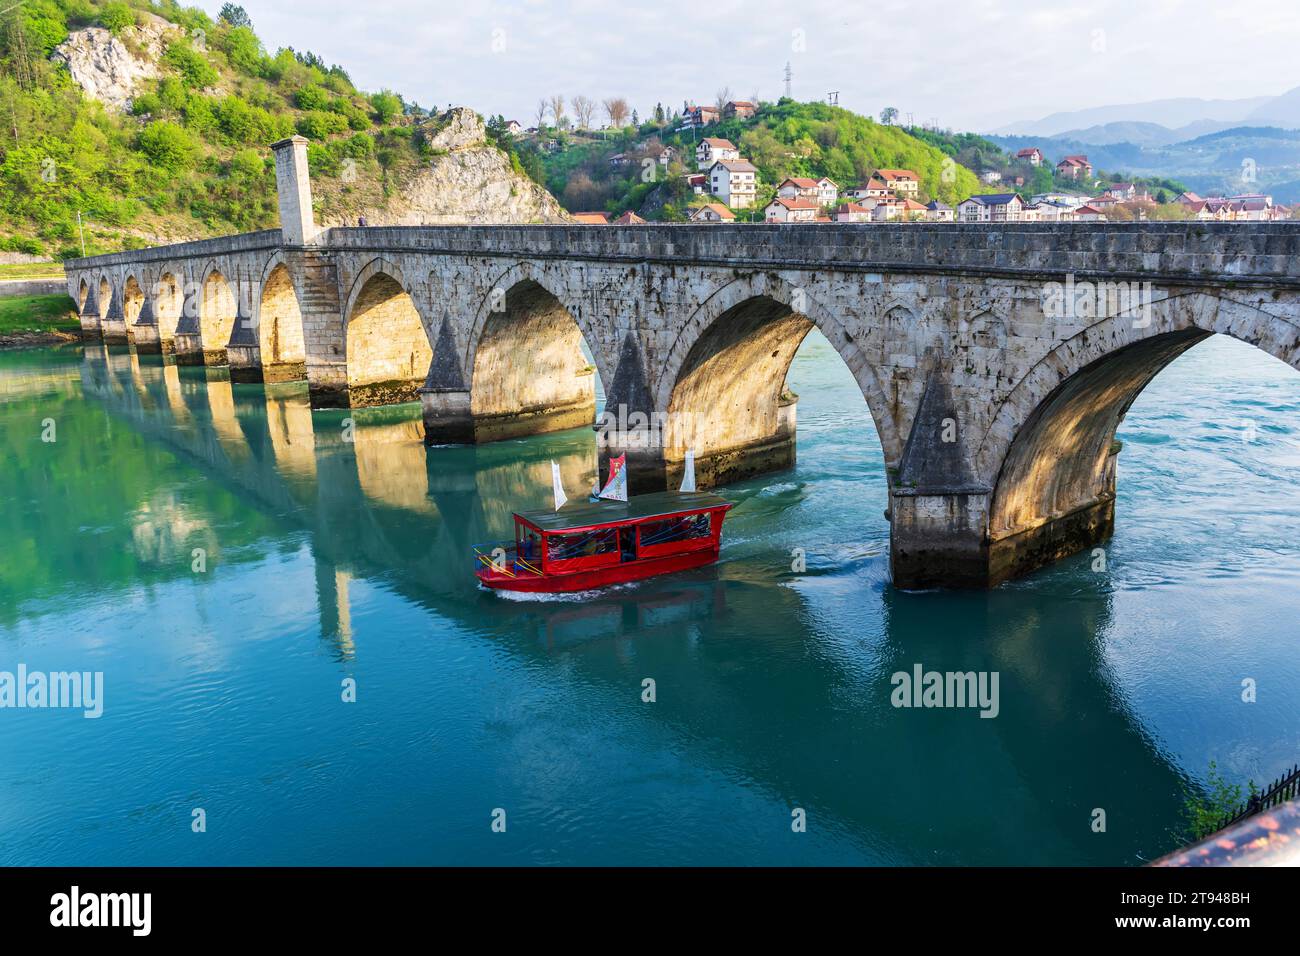 La barca turistica passa sotto il famoso ponte sul fiume Drina a Visegrad, Bosnia ed Erzegovina. Foto Stock